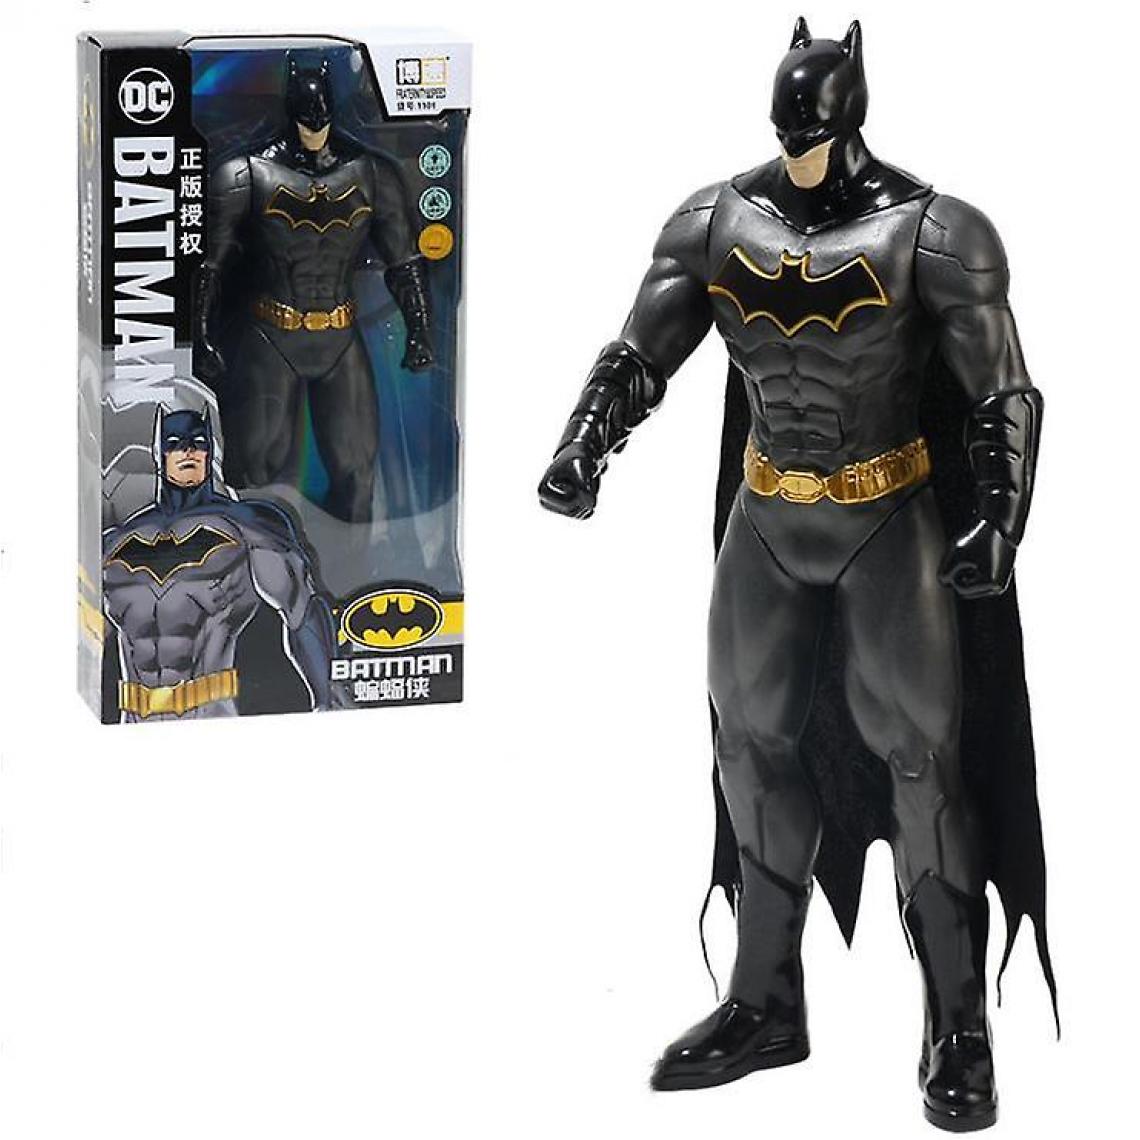 Universal - Décoration de jouet numérique amovible de superhéros (Batman) - Mangas